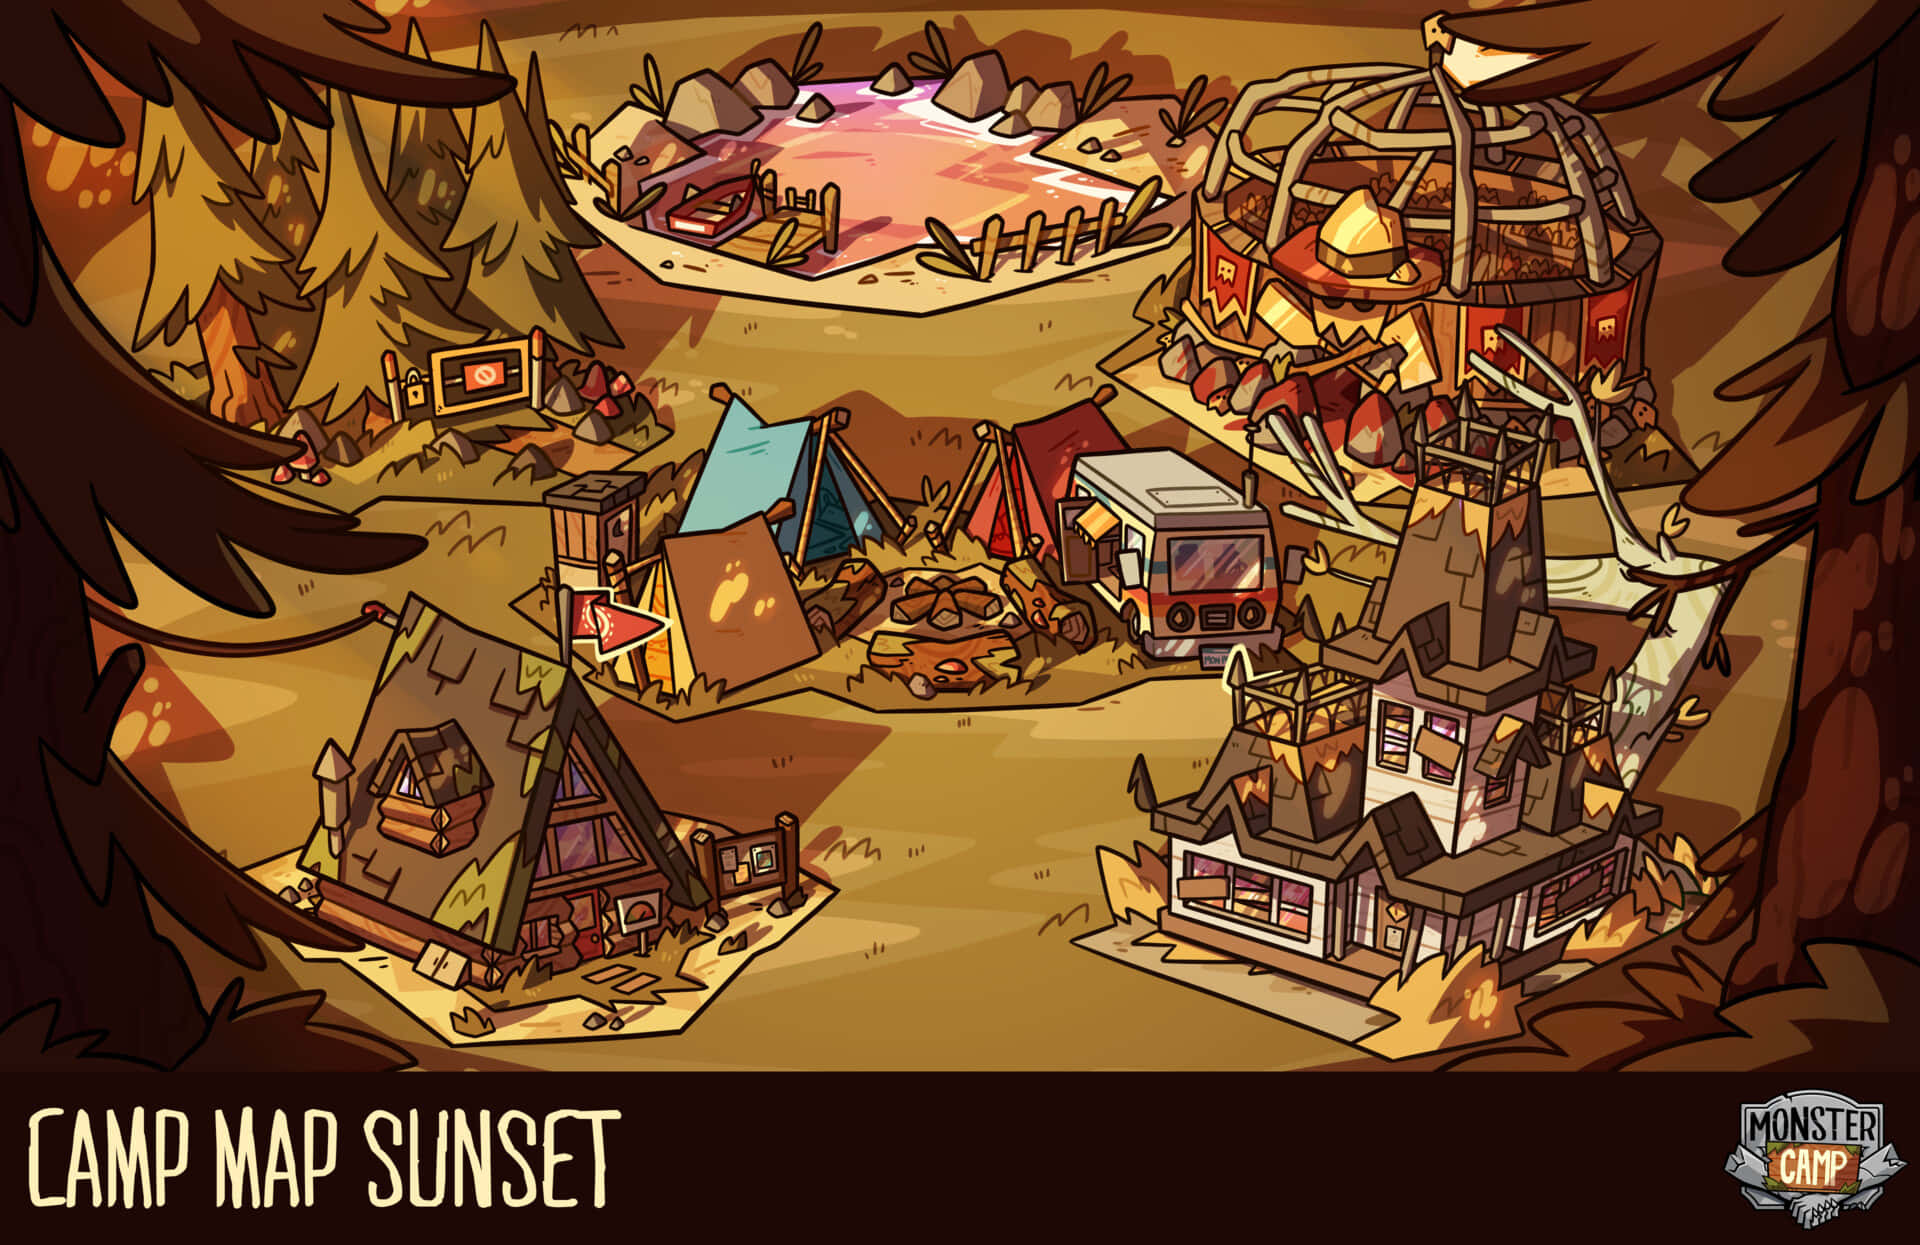 Camp Map Sunset - A Cartoon Map Of A Camp